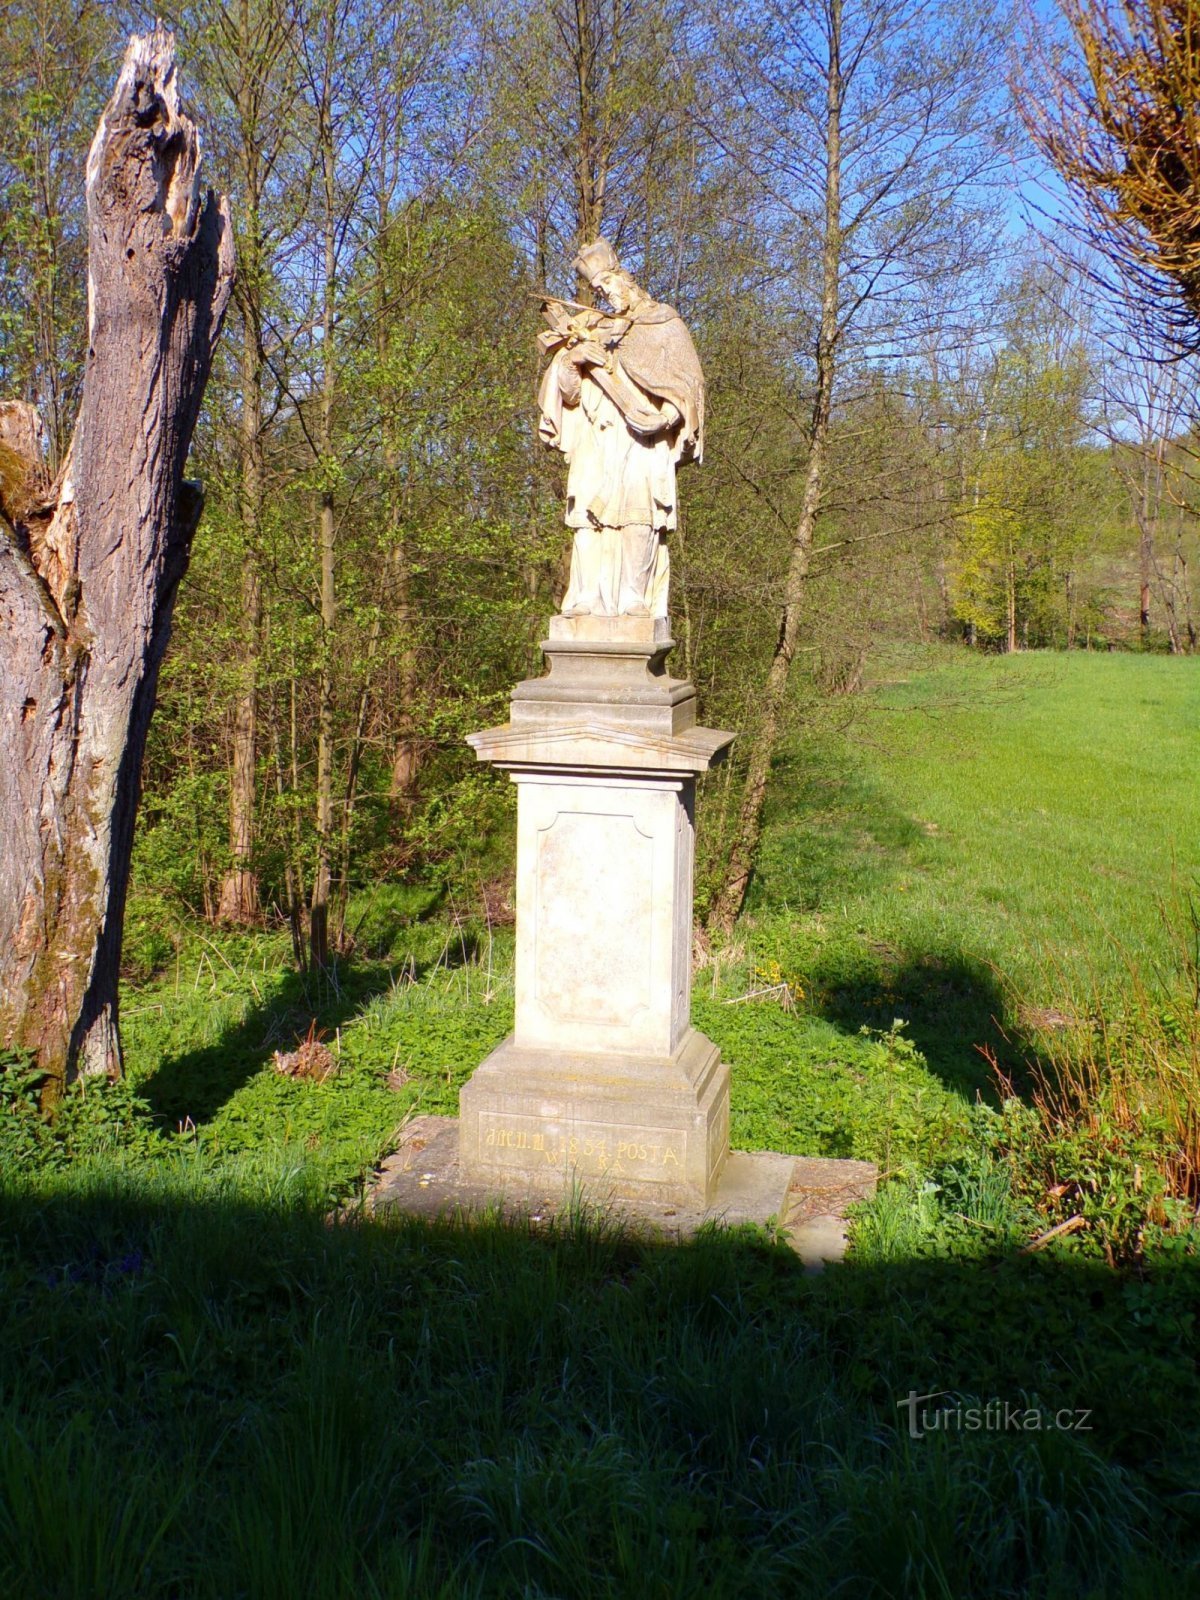 Άγαλμα του Αγ. Ο Jan Nepomucký στο 1ο μέρος του Rabbits (Dolany, 8.5.2022/XNUMX/XNUMX)